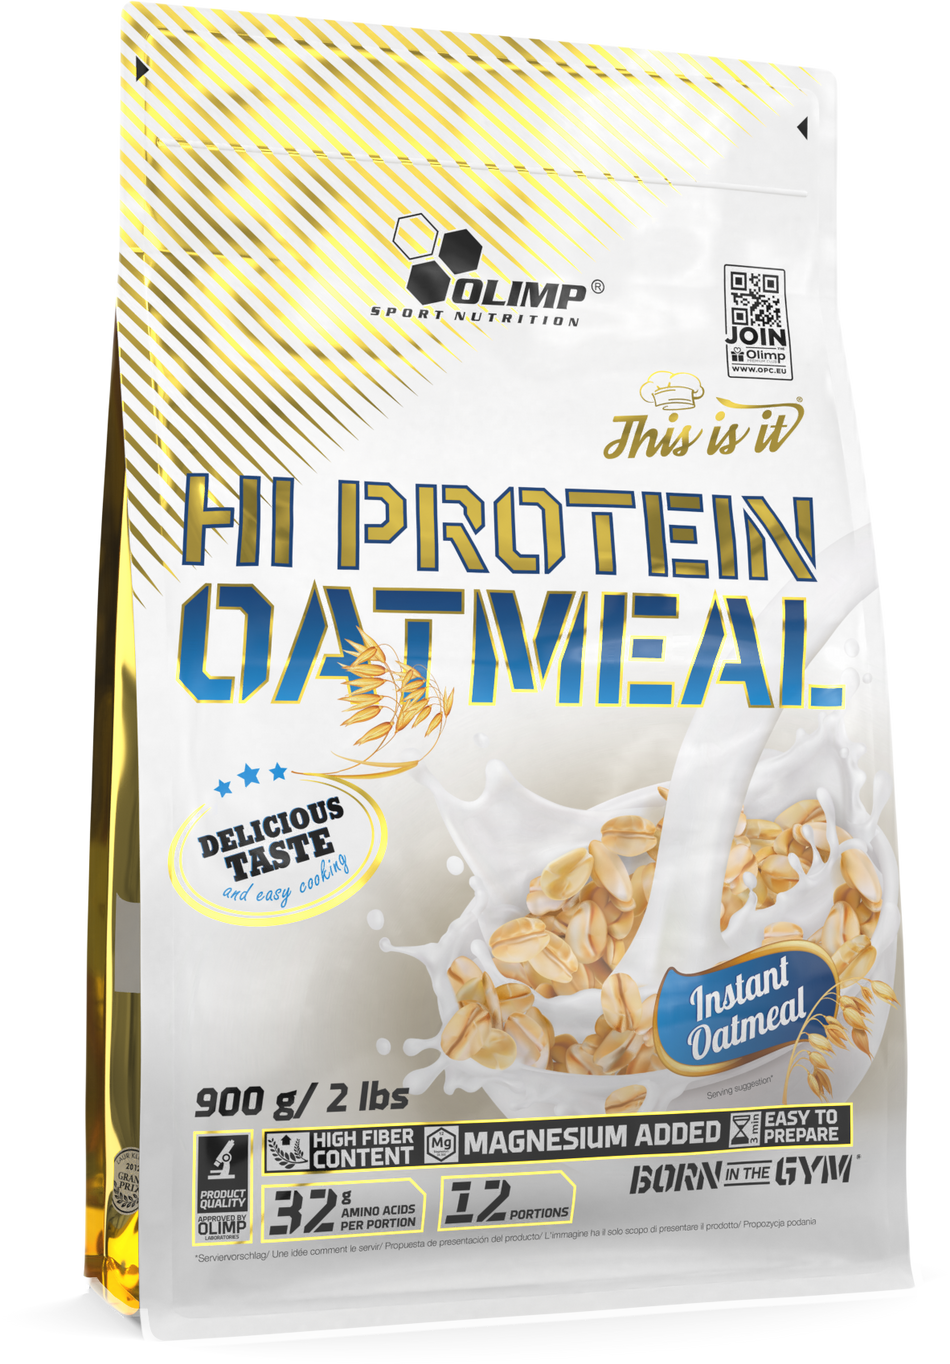 Hi Protein Oatmeal